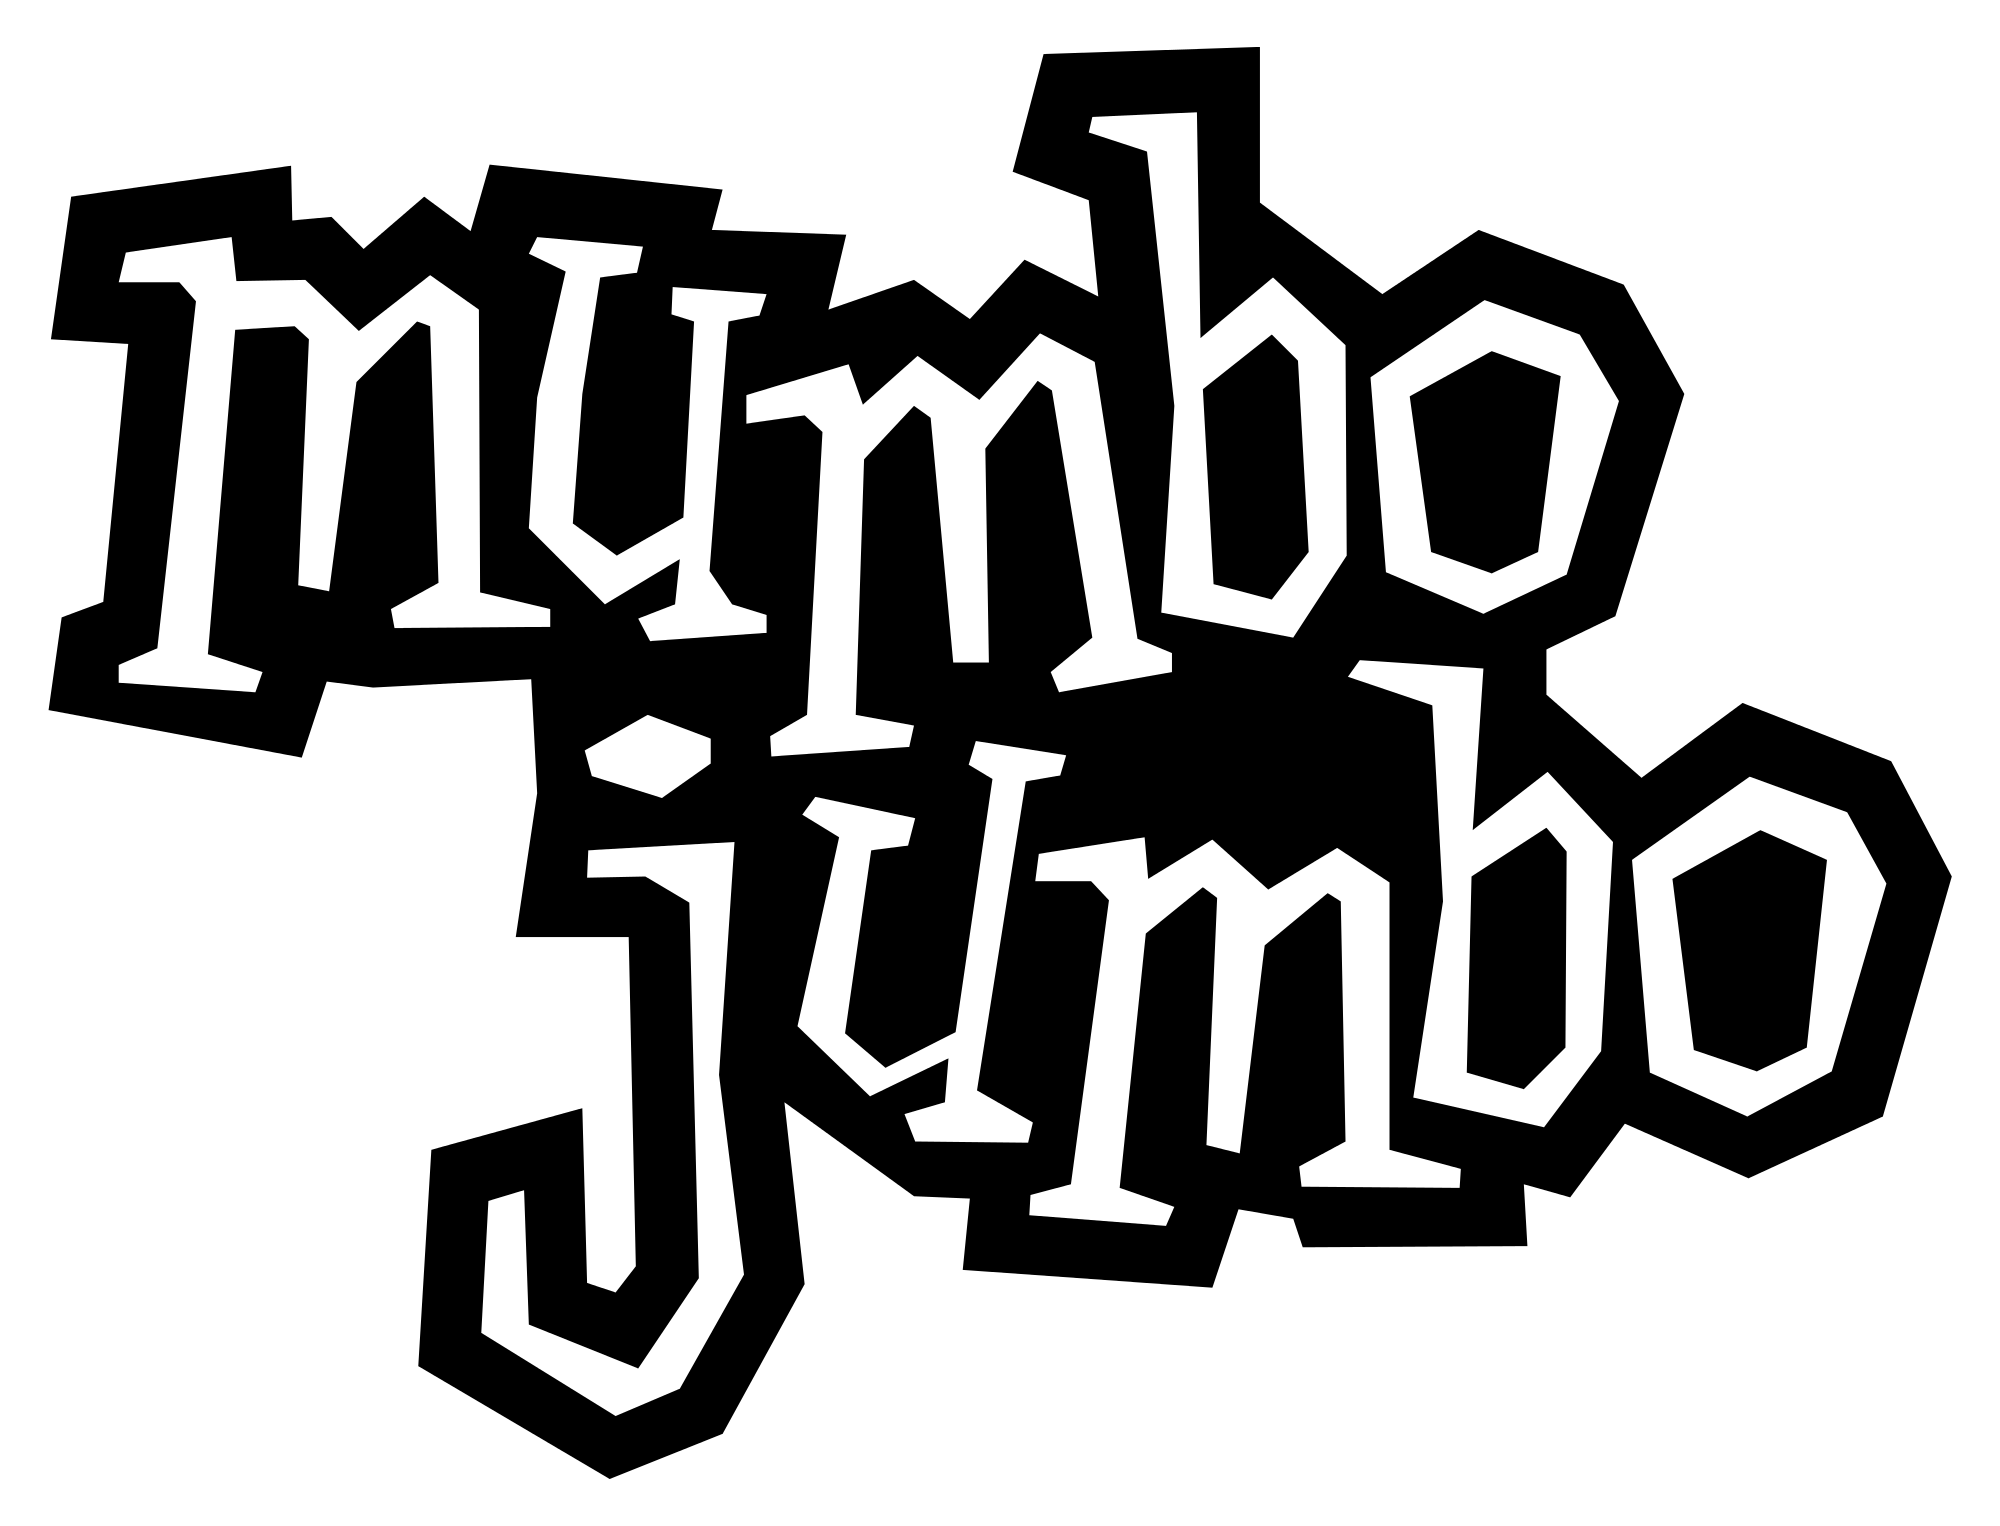 File:Jumbo Logo.svg - Wikipedia